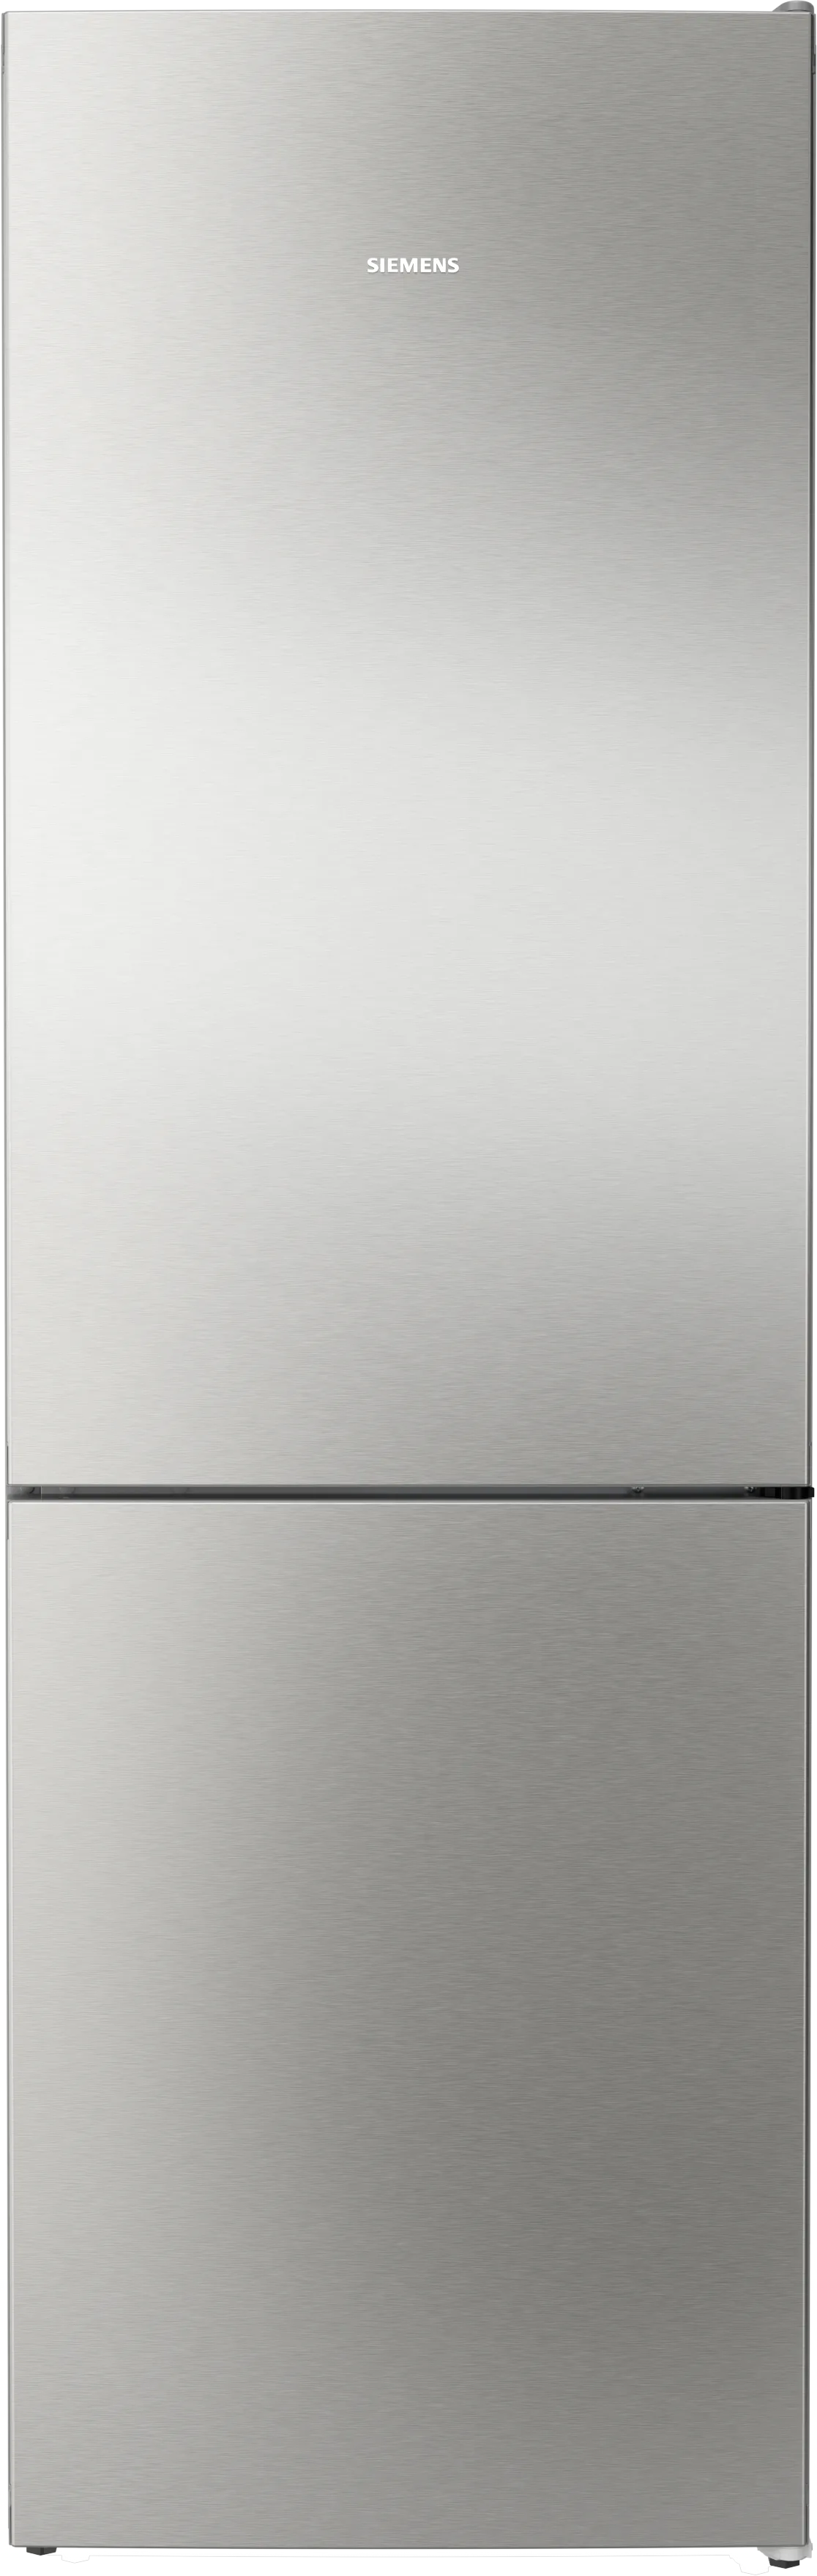 iQ300 Freistehende Kühl-Gefrier-Kombination mit Gefrierbereich unten 186 x 60 cm Edelstahl-antifingerprint 